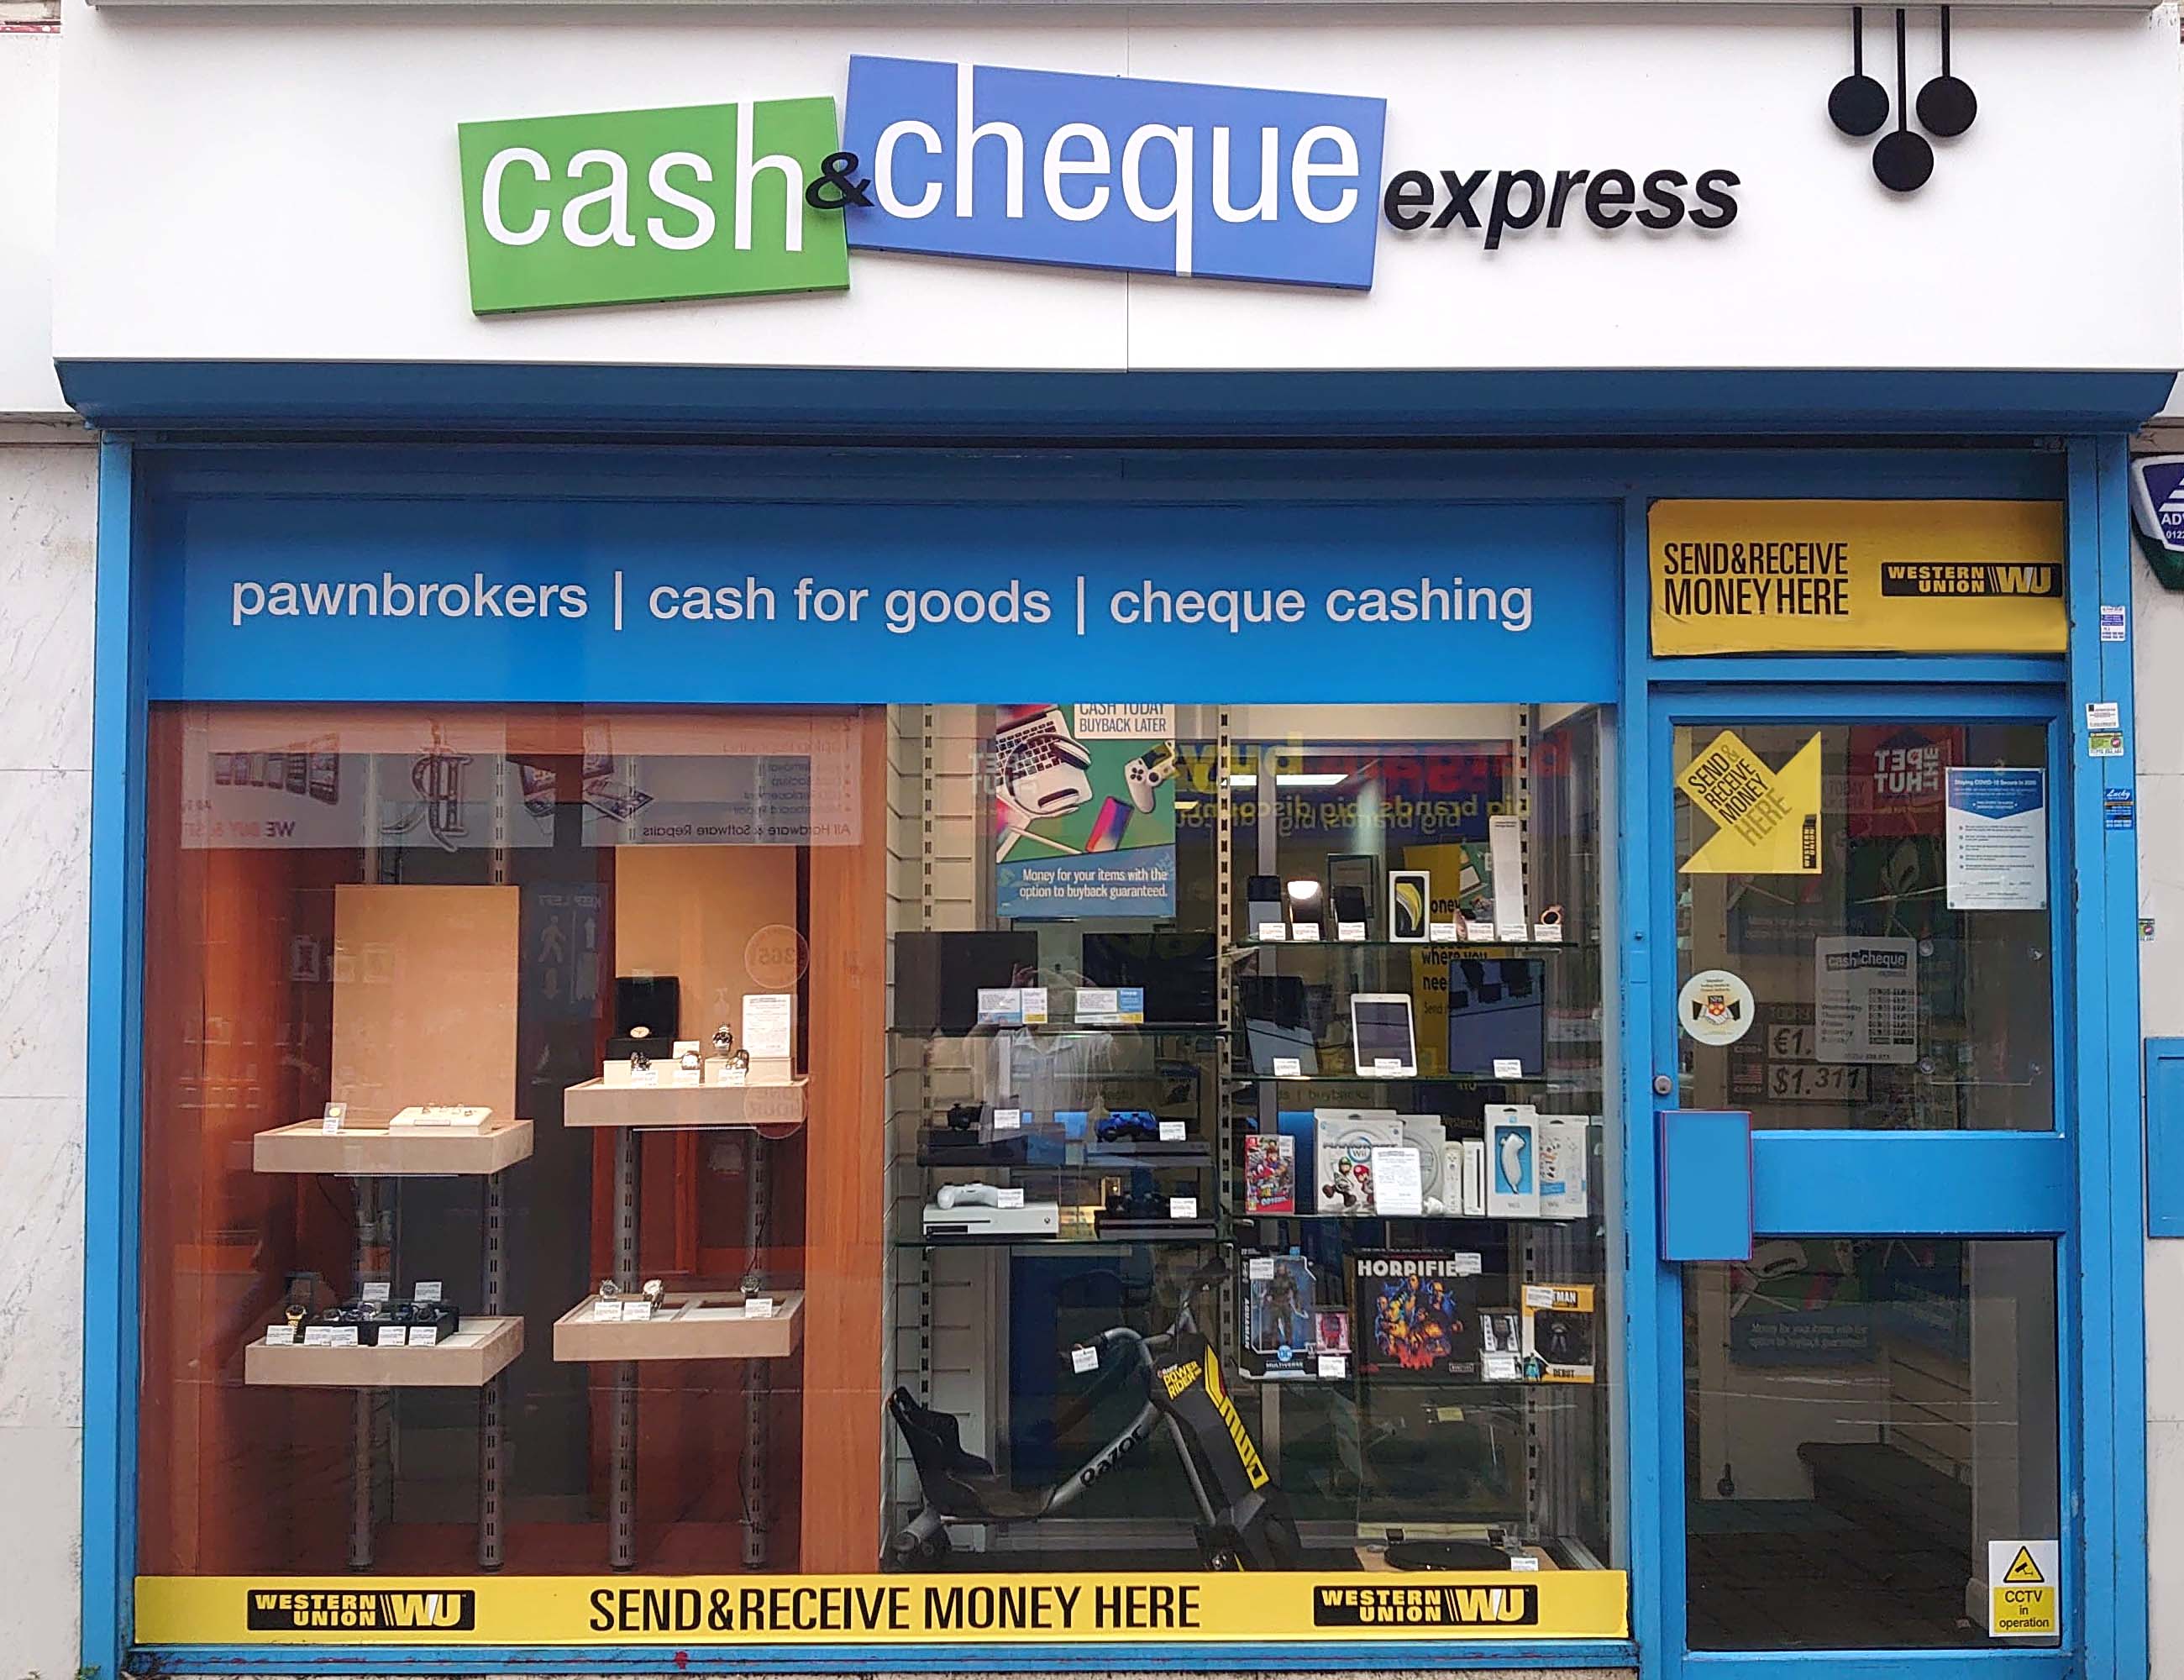 Cash & Cheque Express (Aldershot) 04